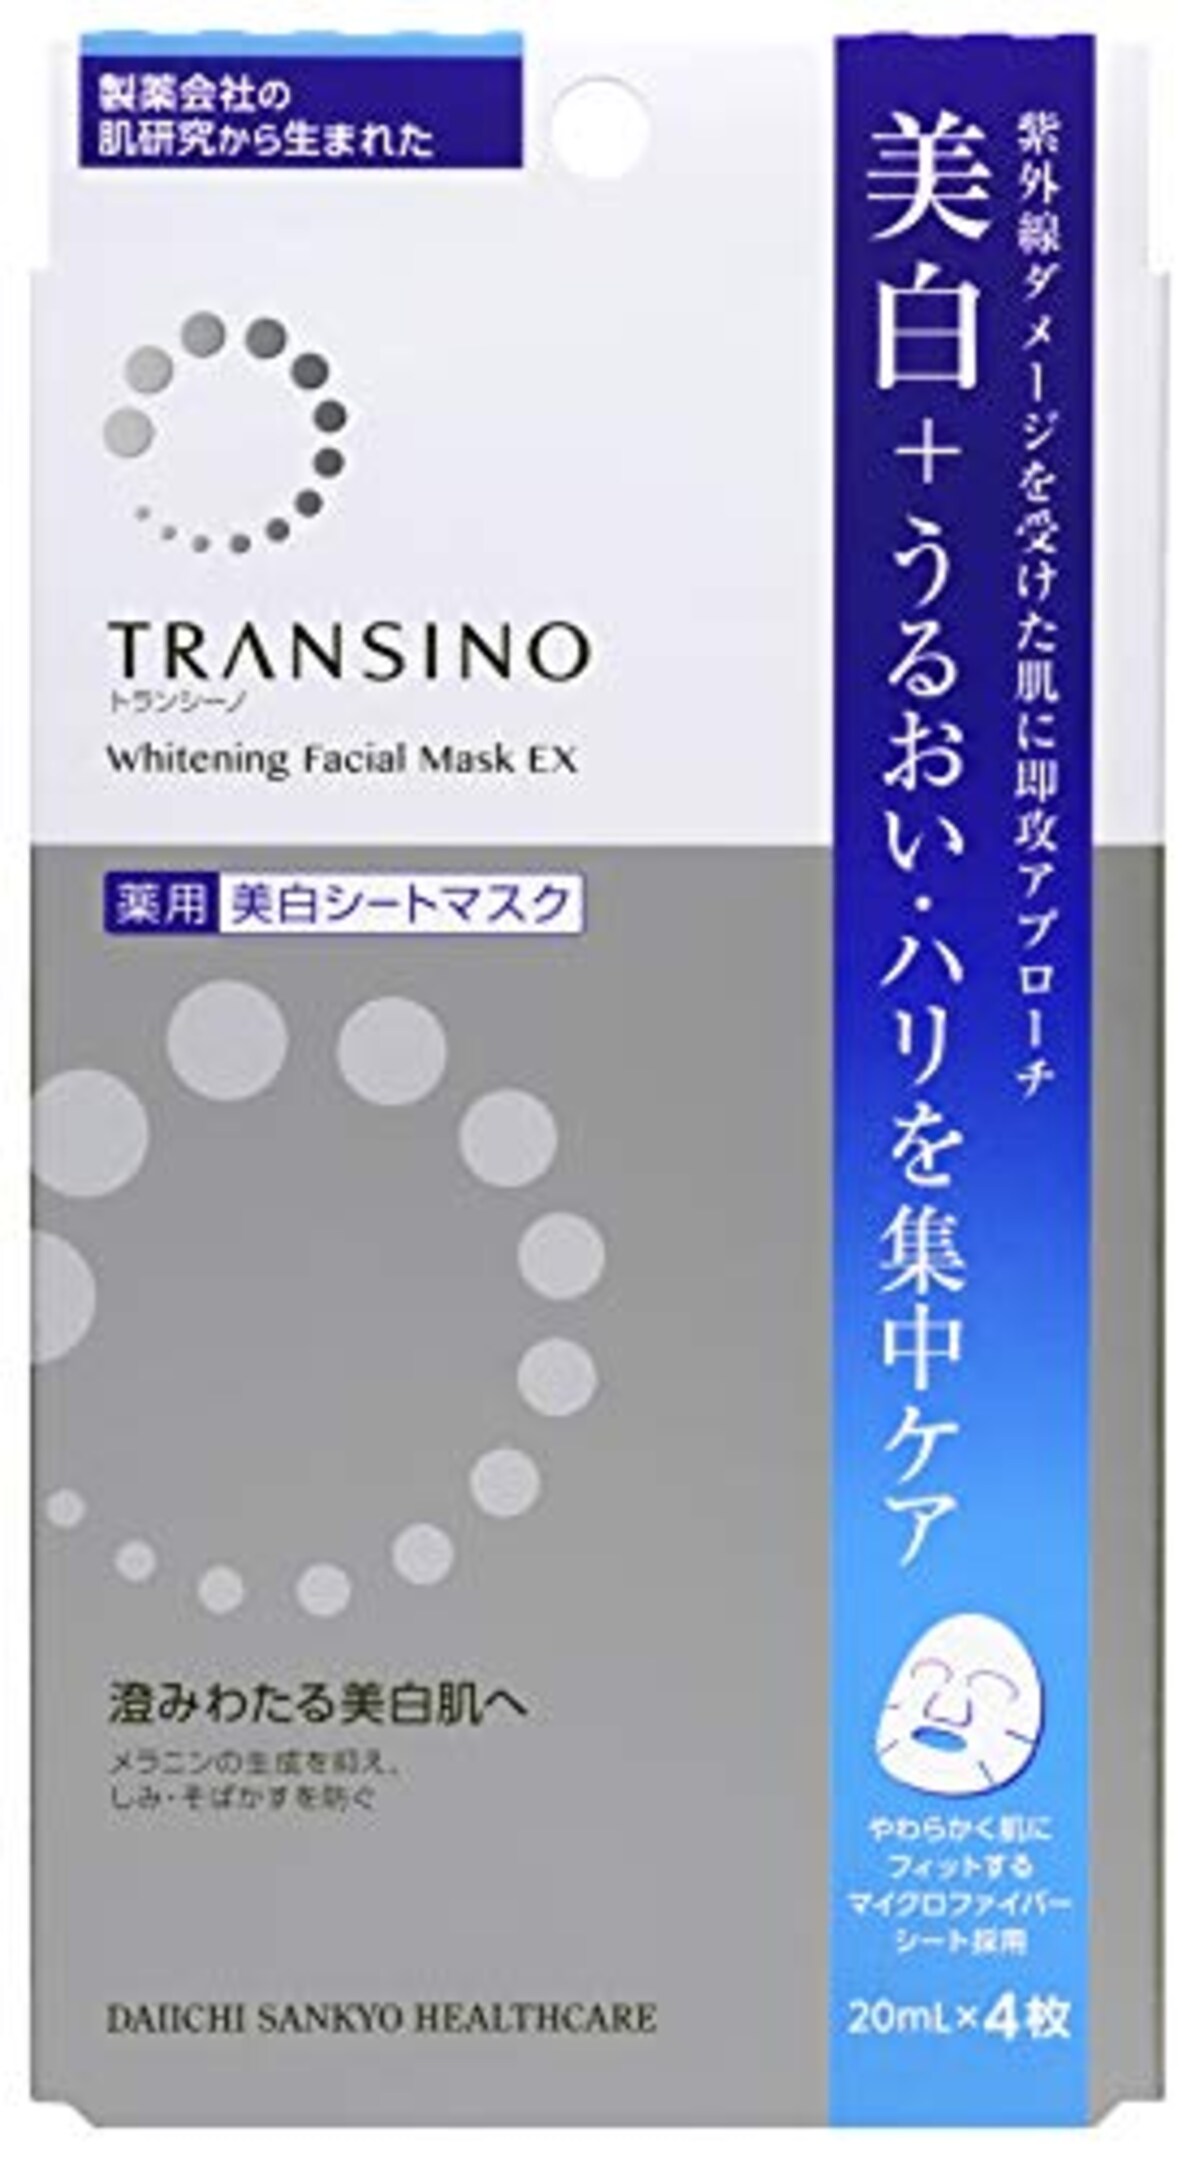 トランシーノ 薬用 ホワイトニングフェイシャルマスクEX